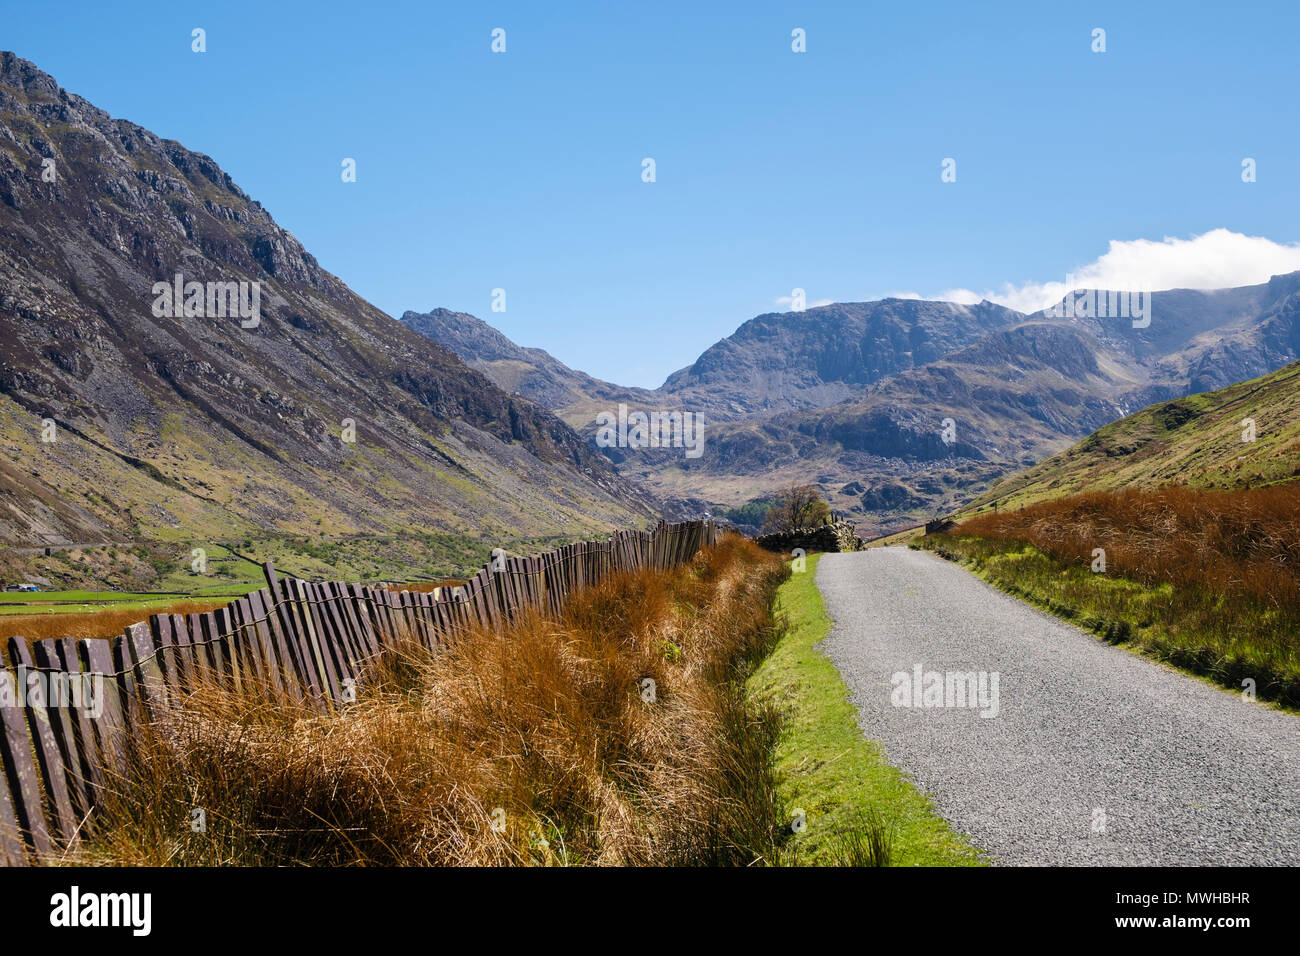 Un chemin de campagne à l'ardoise (clôture) Crawia à Nant Ffrancon valley dans la région de montagnes de Snowdonia National Park. Ogwen Gwynedd Bethesda North Wales UK Banque D'Images